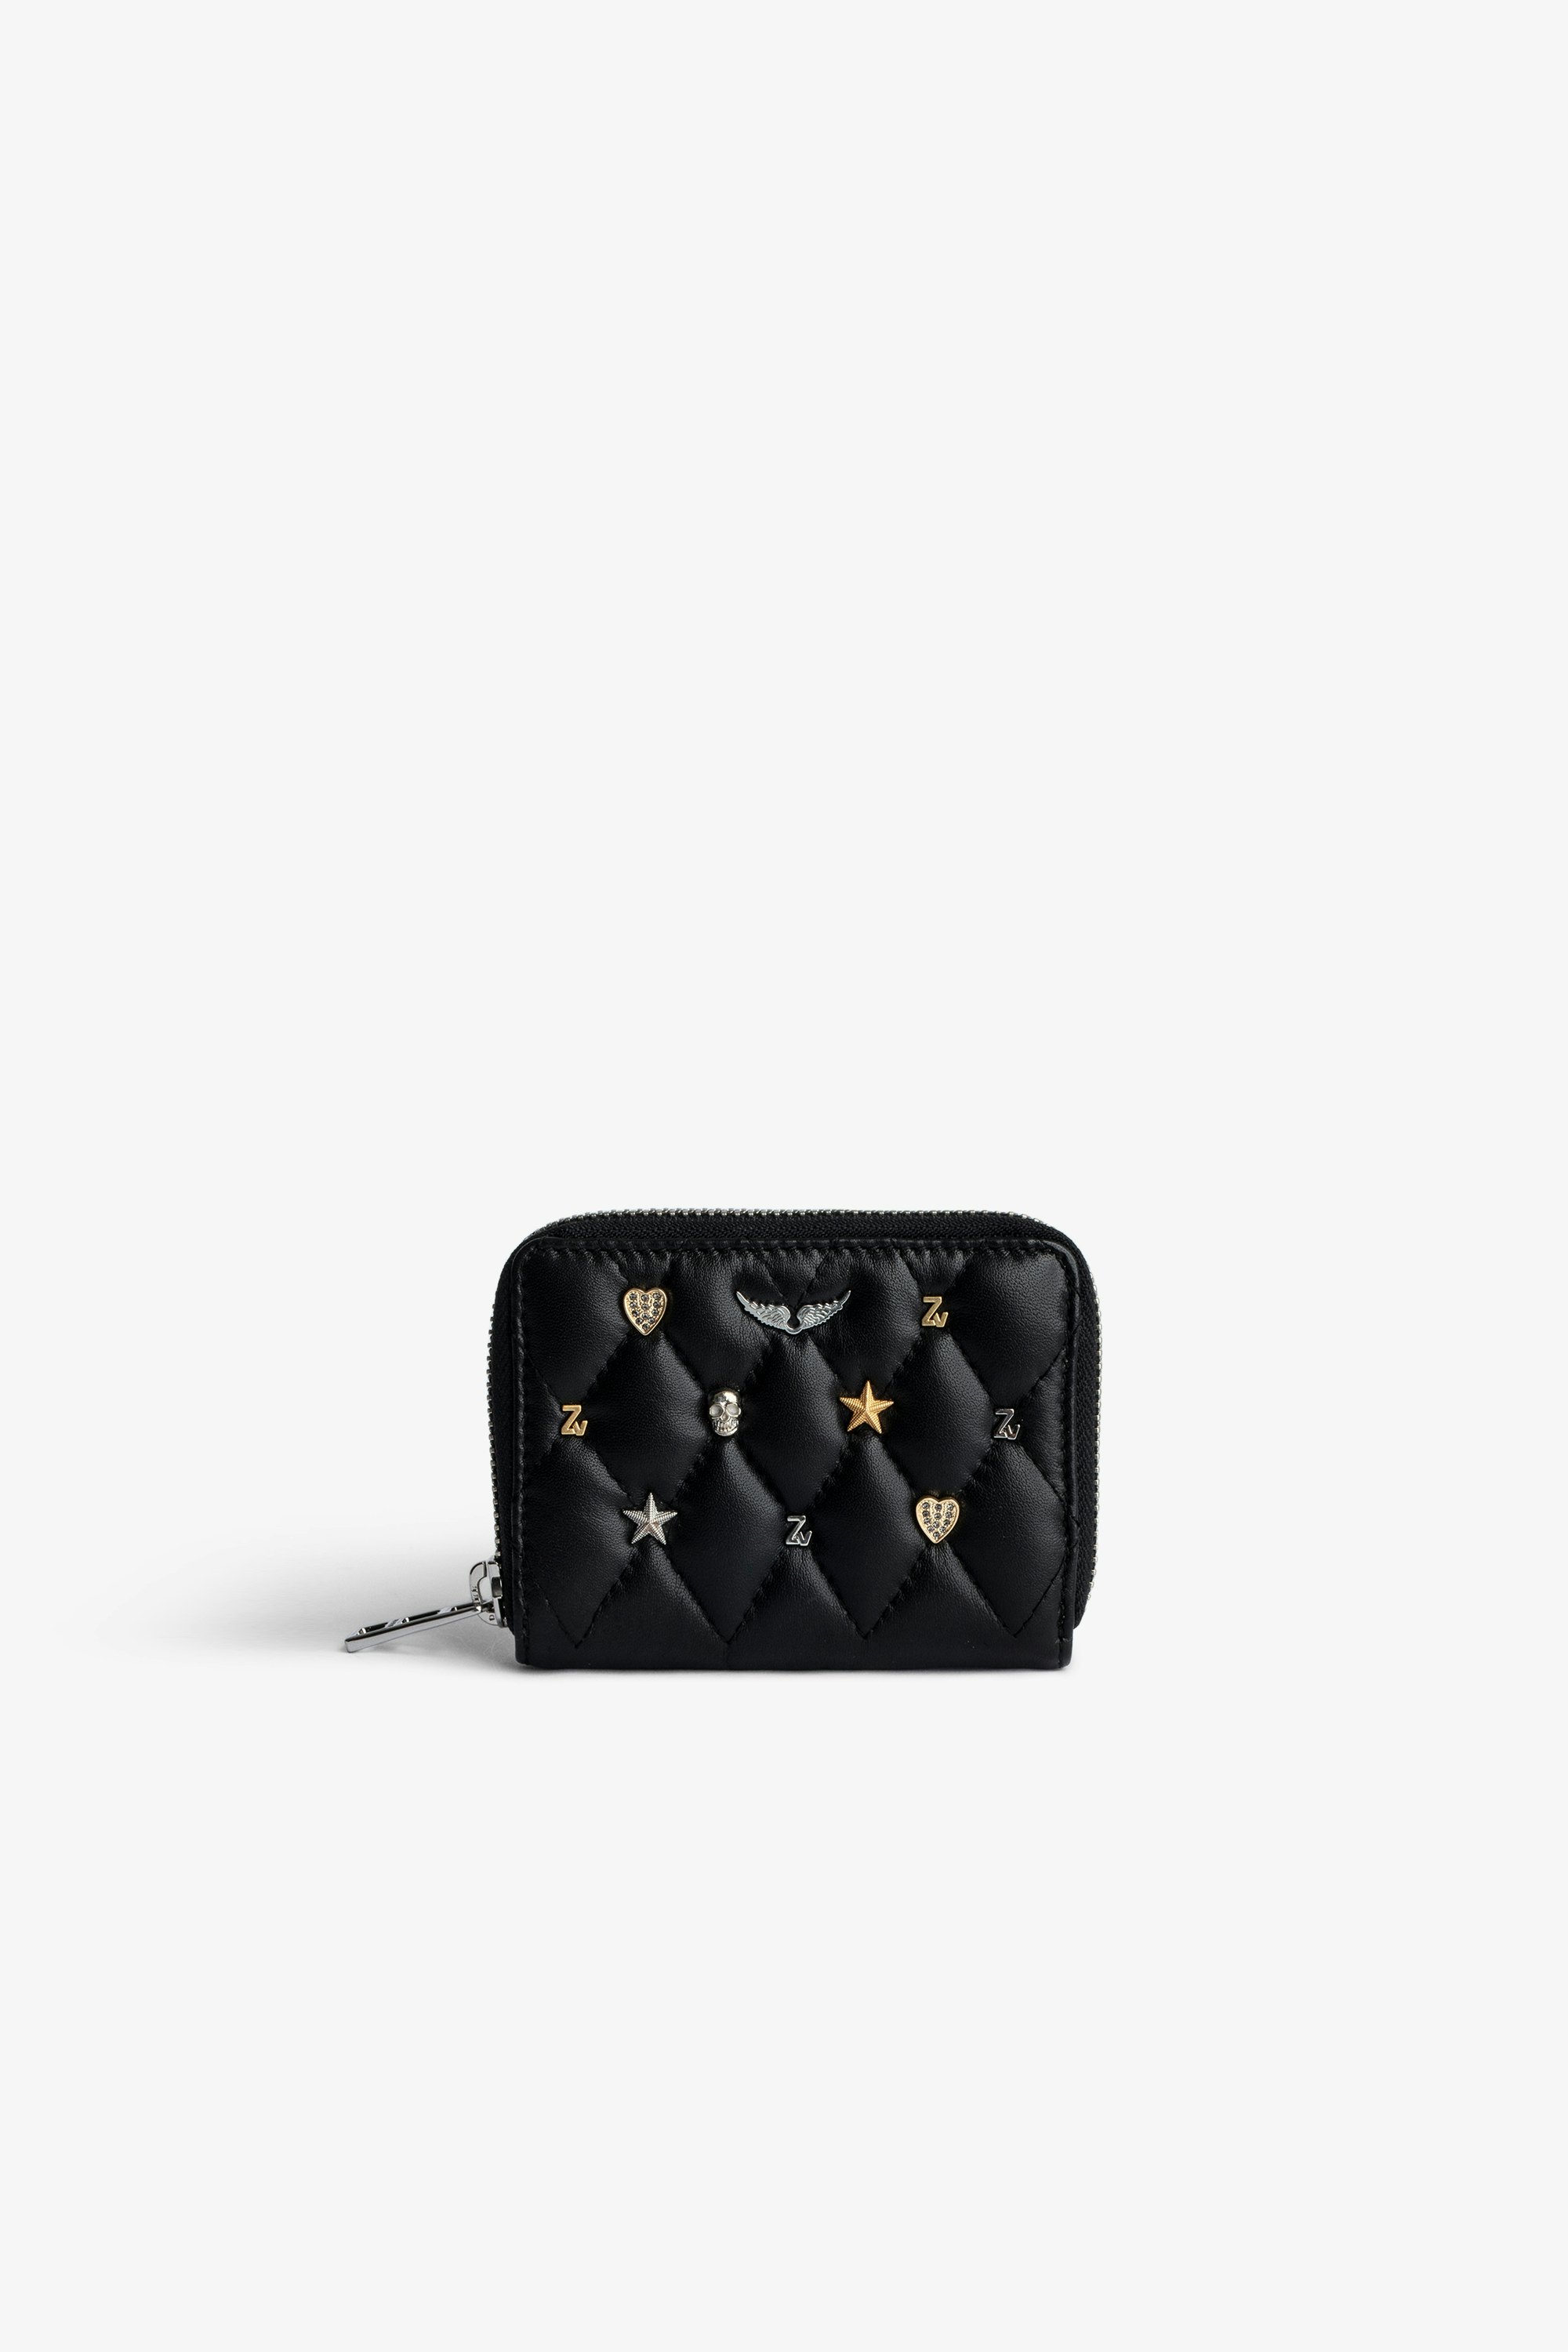 Portemonnaie Mini ZV Schwarzes Damen-Portemonnaie mit Reißverschluss aus gestepptem Leder mit silber- und goldfarbenen Charms